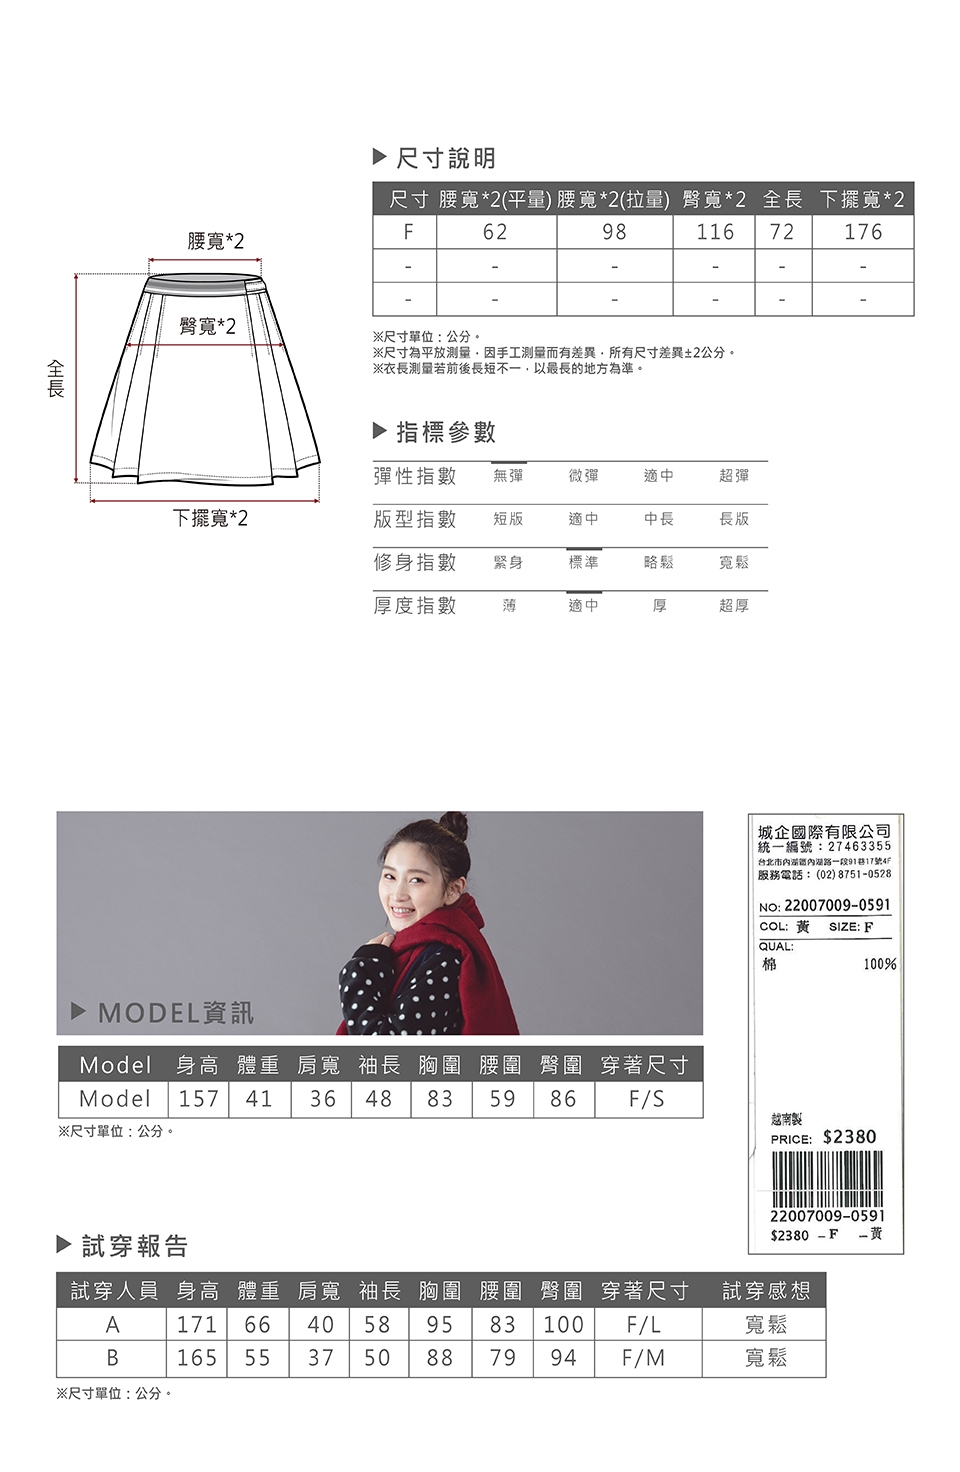 【Dailo】刺繡Q貓英倫風格紋-長裙(二色)